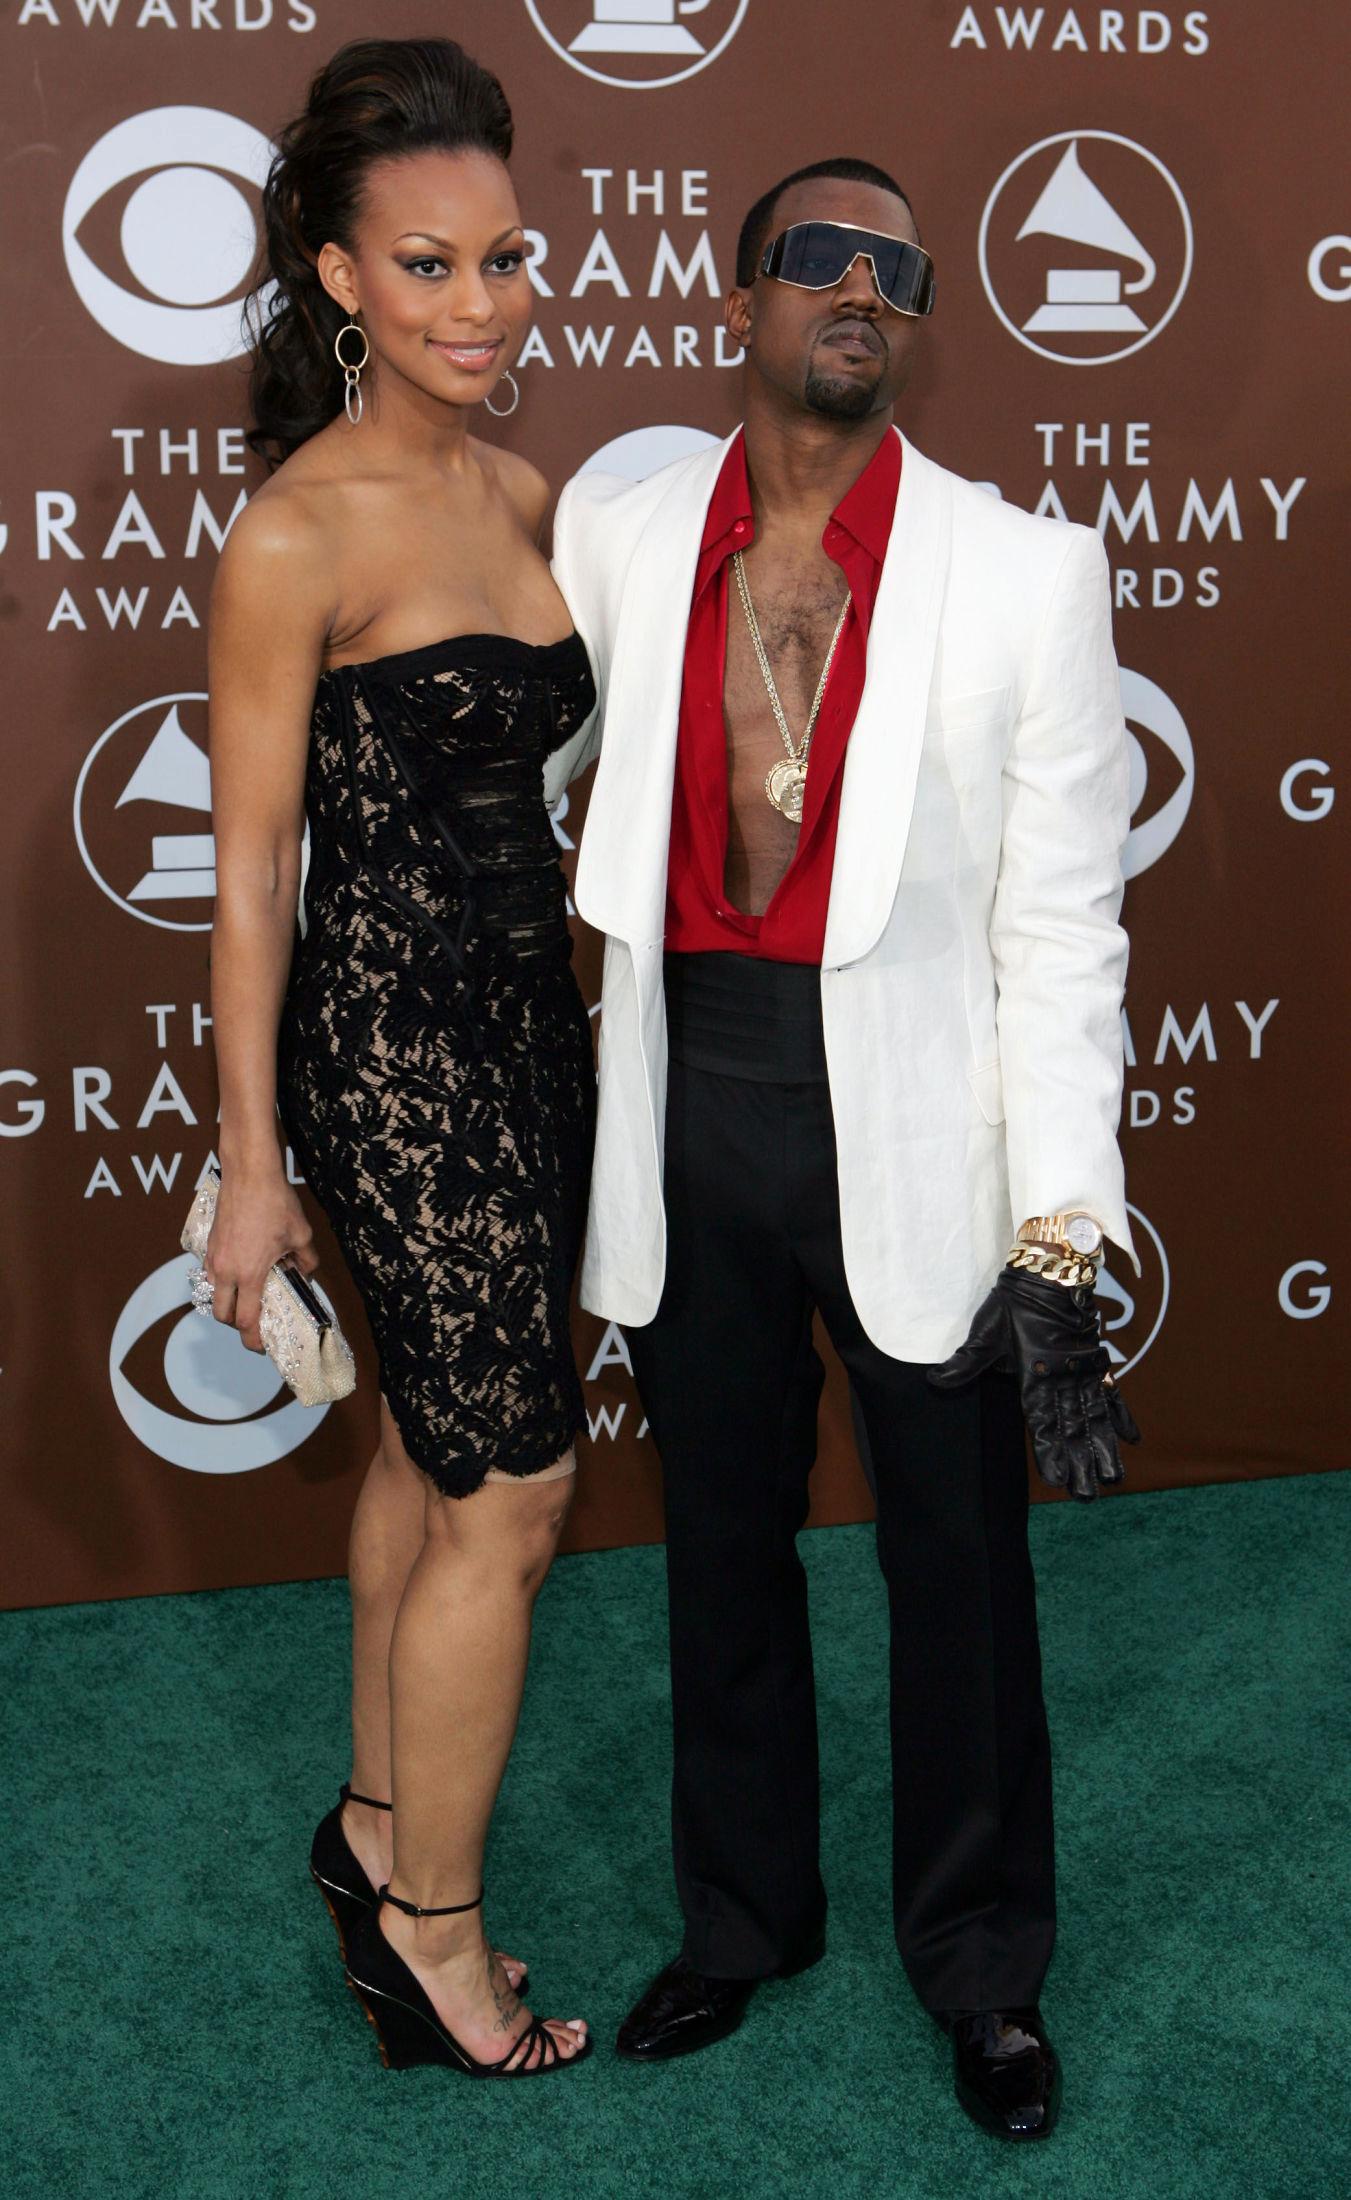 FINSTASEN: Det så ut til at Kanye West kom enten rett ut fra Sopranos eller en salsa-time da han var på Grammy-utdelingen i 2006. Foto: AP